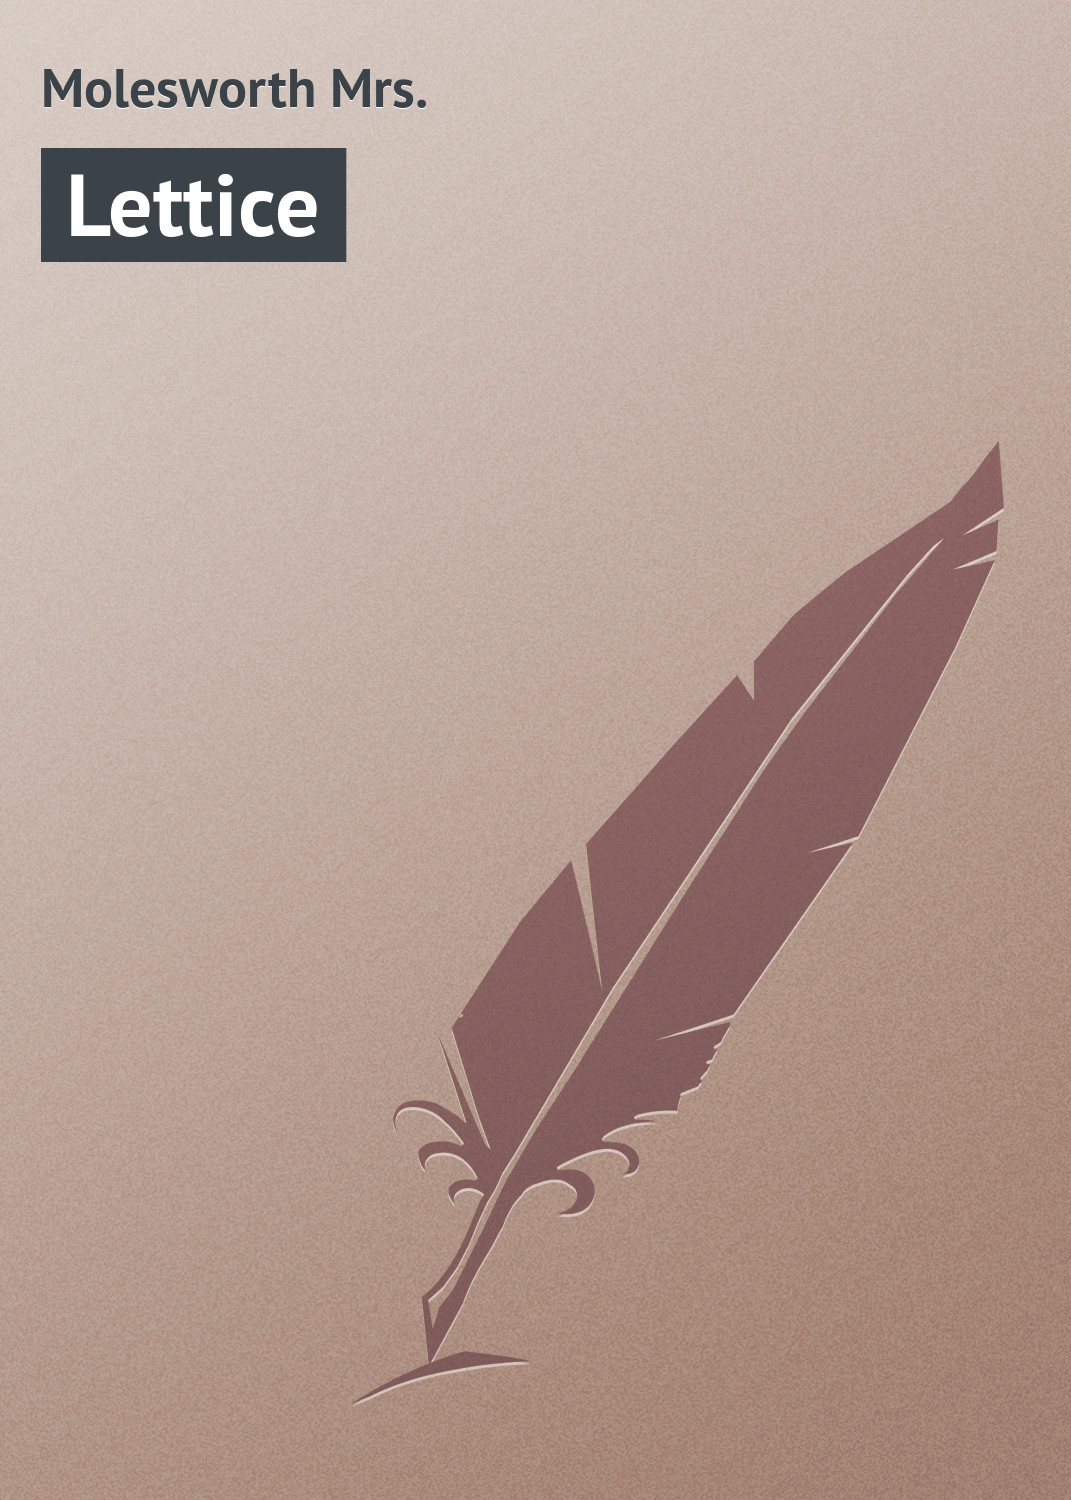 Книга Lettice из серии , созданная Mrs. Molesworth, может относится к жанру Зарубежная классика. Стоимость электронной книги Lettice с идентификатором 23162019 составляет 5.99 руб.